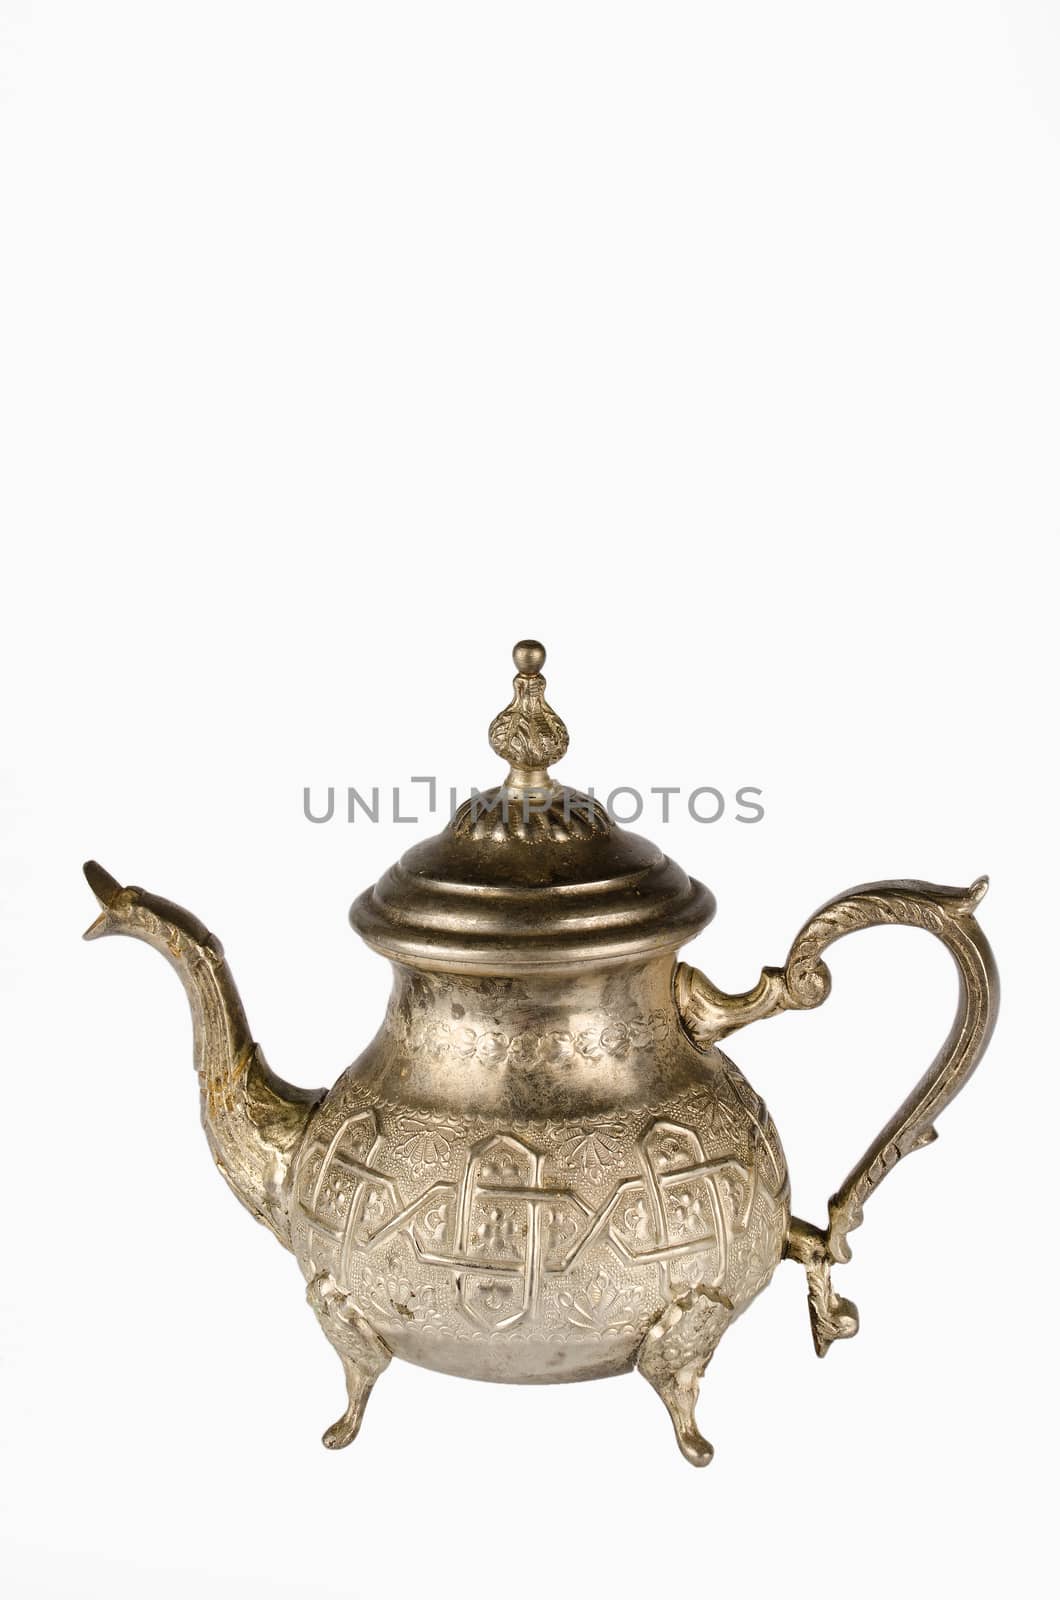 Studio shot of an antique decorative teapot